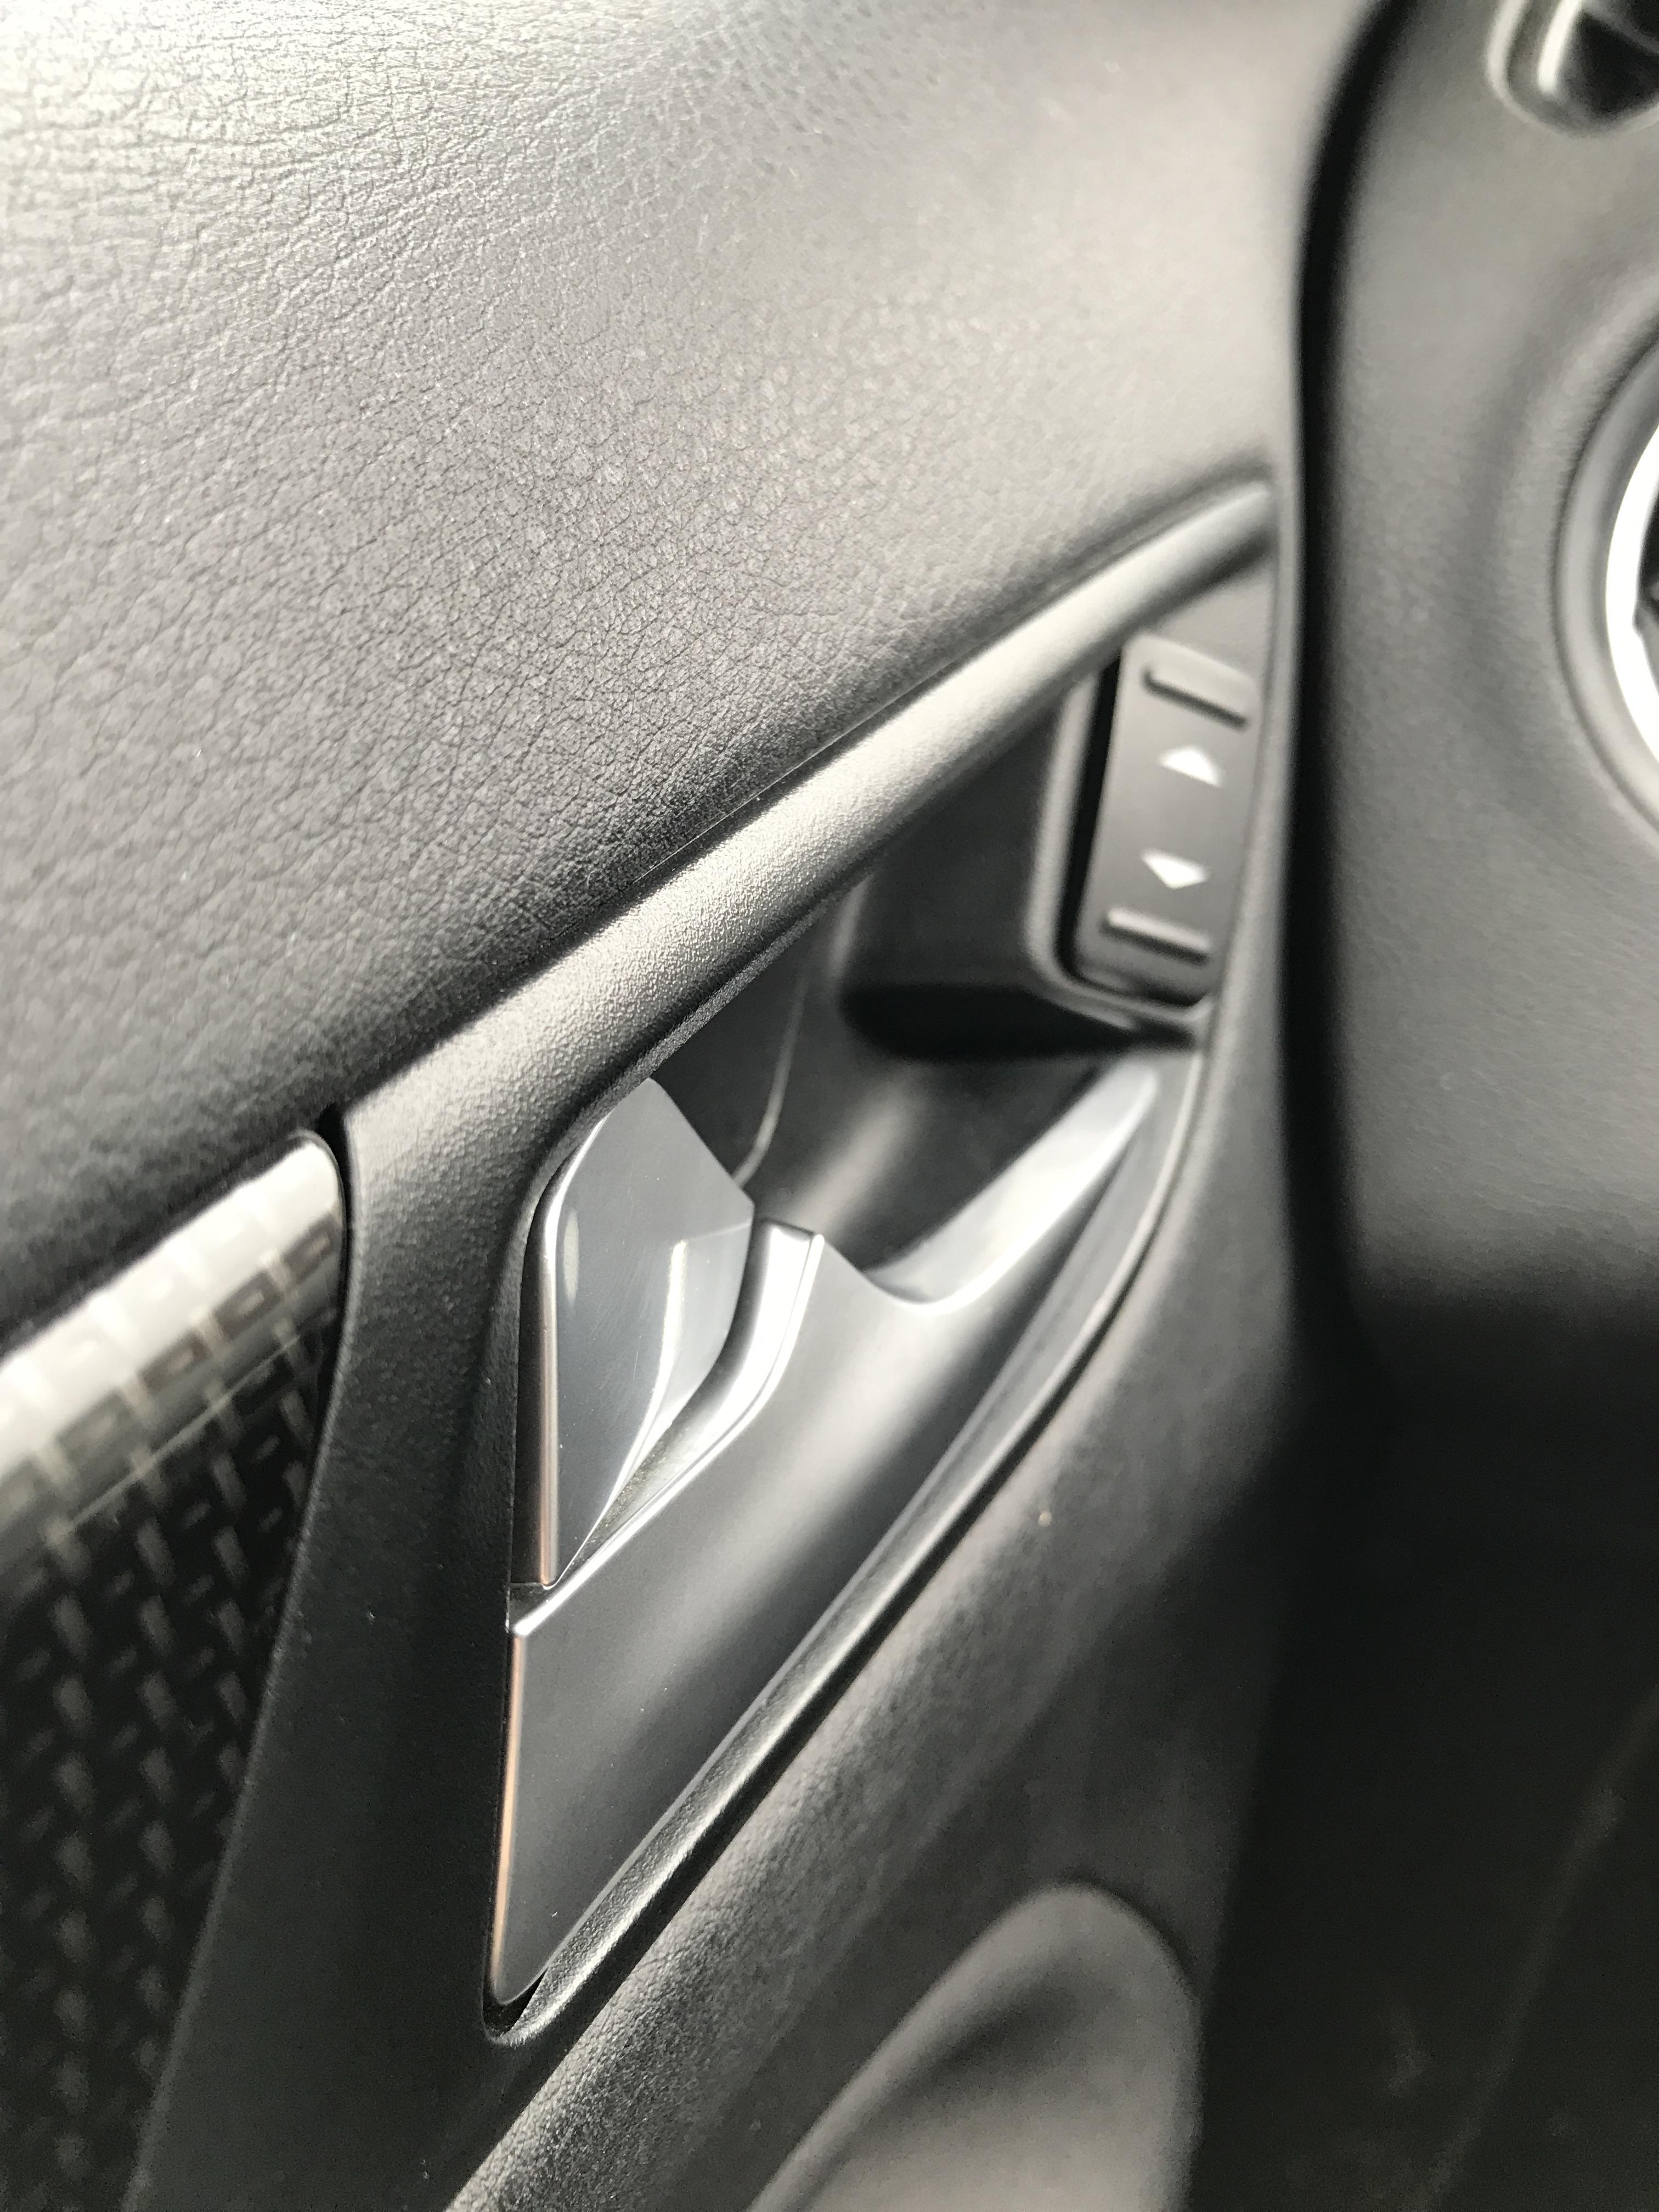 MK4 - Passenger door locking/unlocking problems - Ford Mondeo / Vignale ...